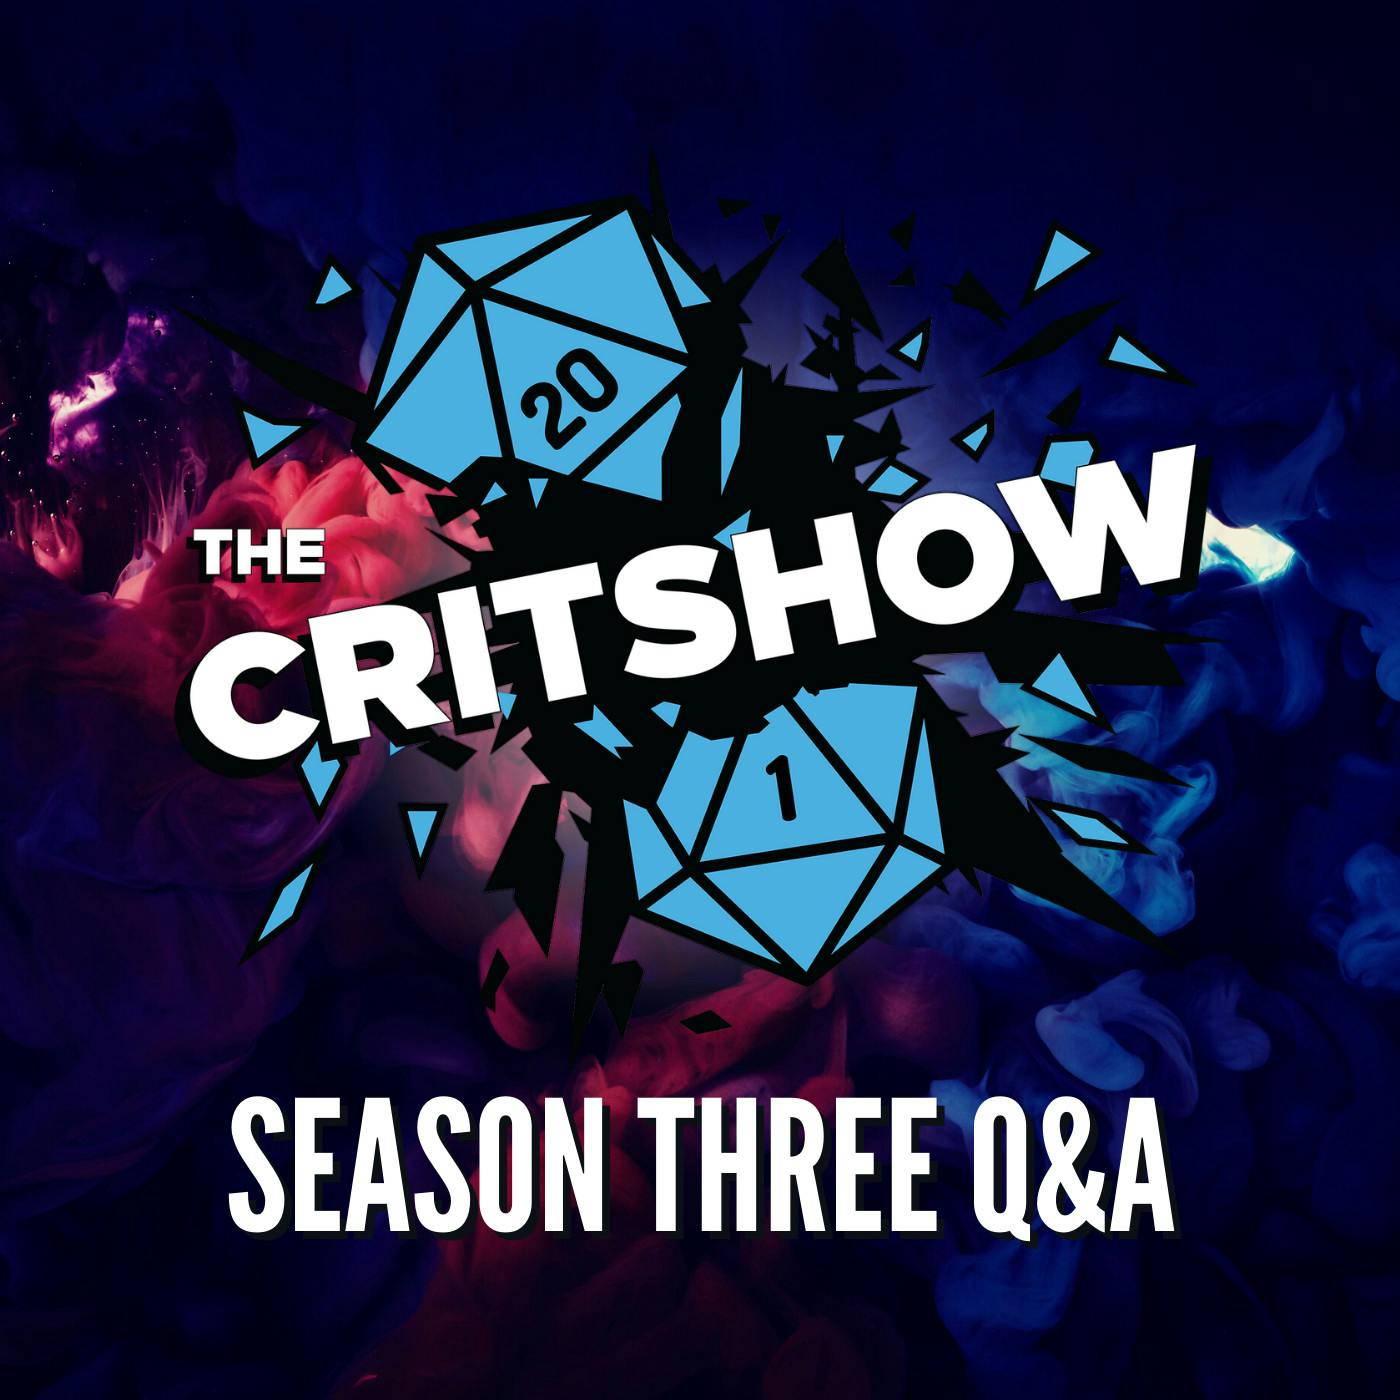 The Critshow: Season 3 Q/A